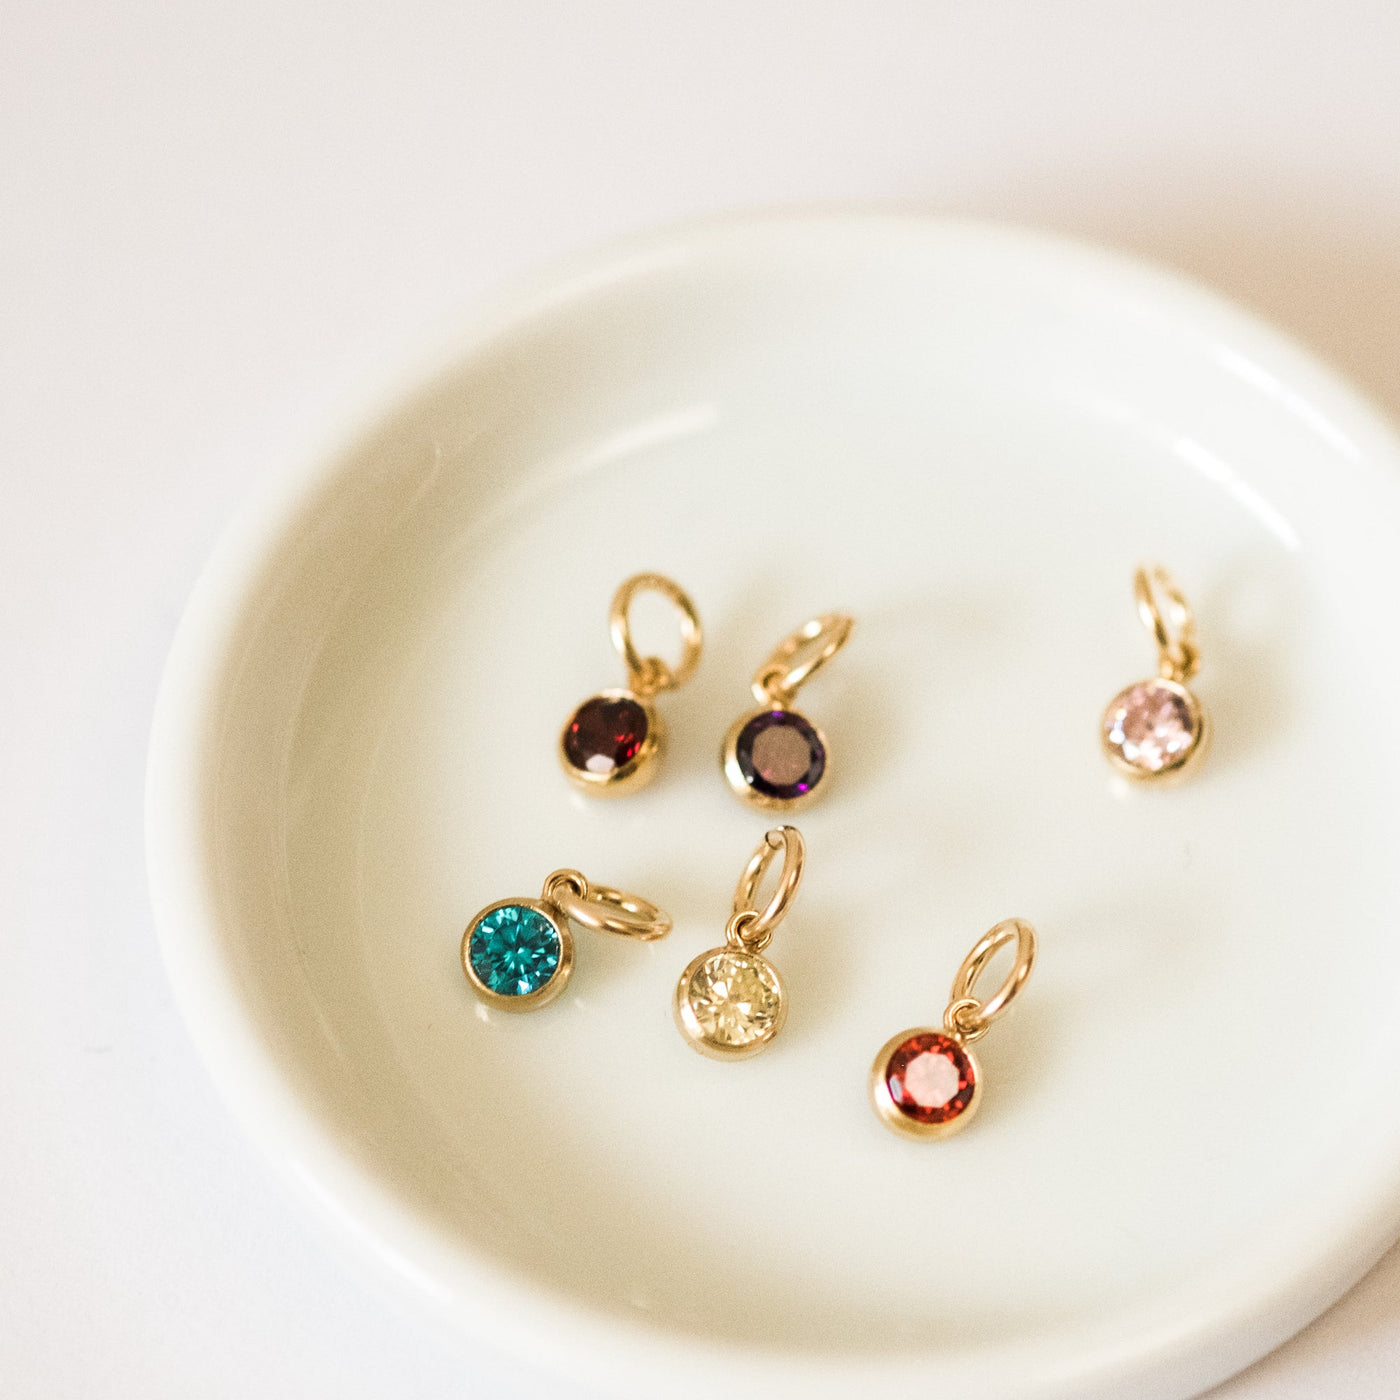 January Birthstone Charm (Garnet) | Simple & Dainty Jewelry